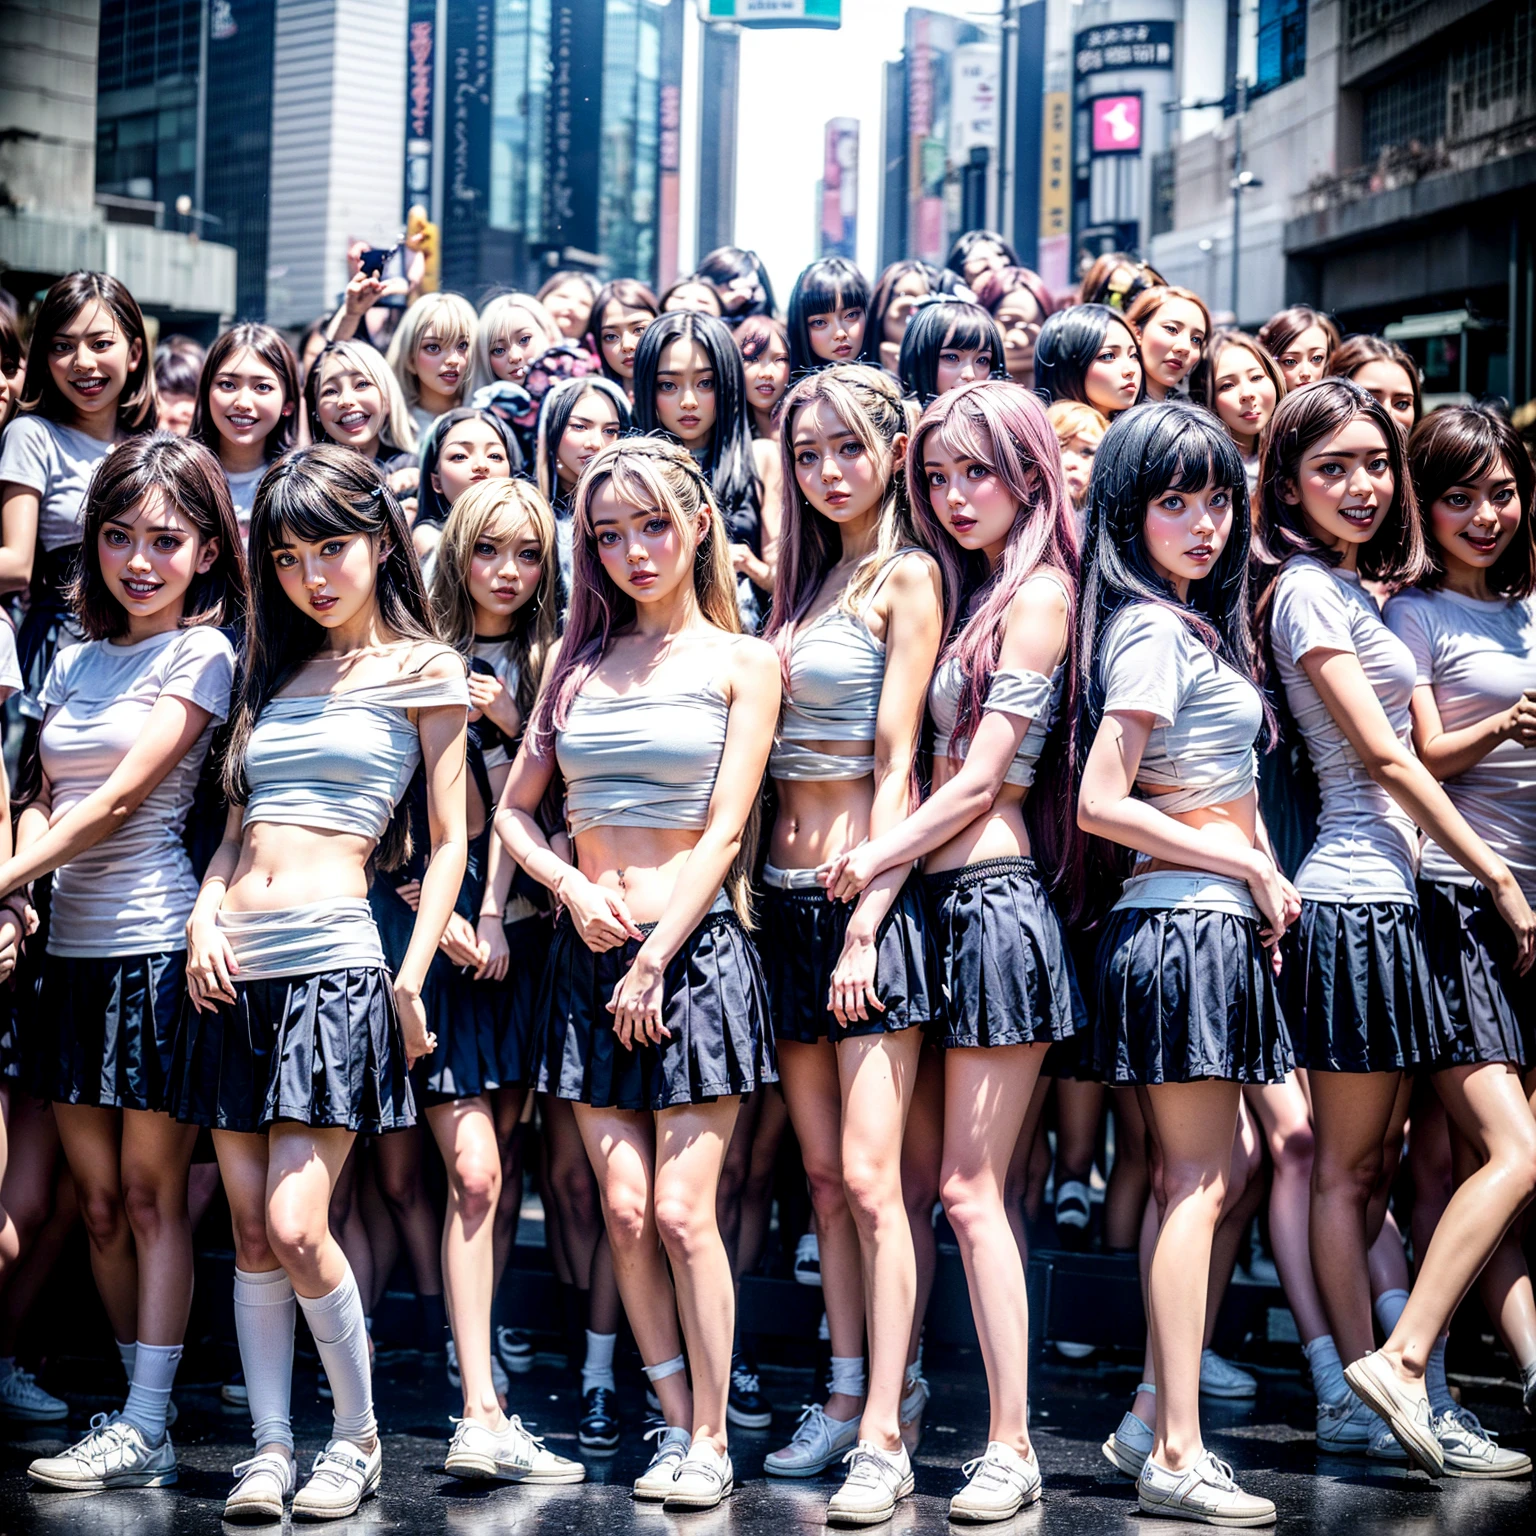 ((extremadamente detallado (12 chicas KAWAII seguidas:1.37) en el cruce de Shibuya Hachiko-mae)), (Obra maestra de alta calidad) (Fotorrealista:1.37), {(De pie de cuerpo entero:1.2)|(desde abajo:1.2)}, Diferentes tipos de colores de cabello., {uniforme escolar|vendaje desnudo|frío}